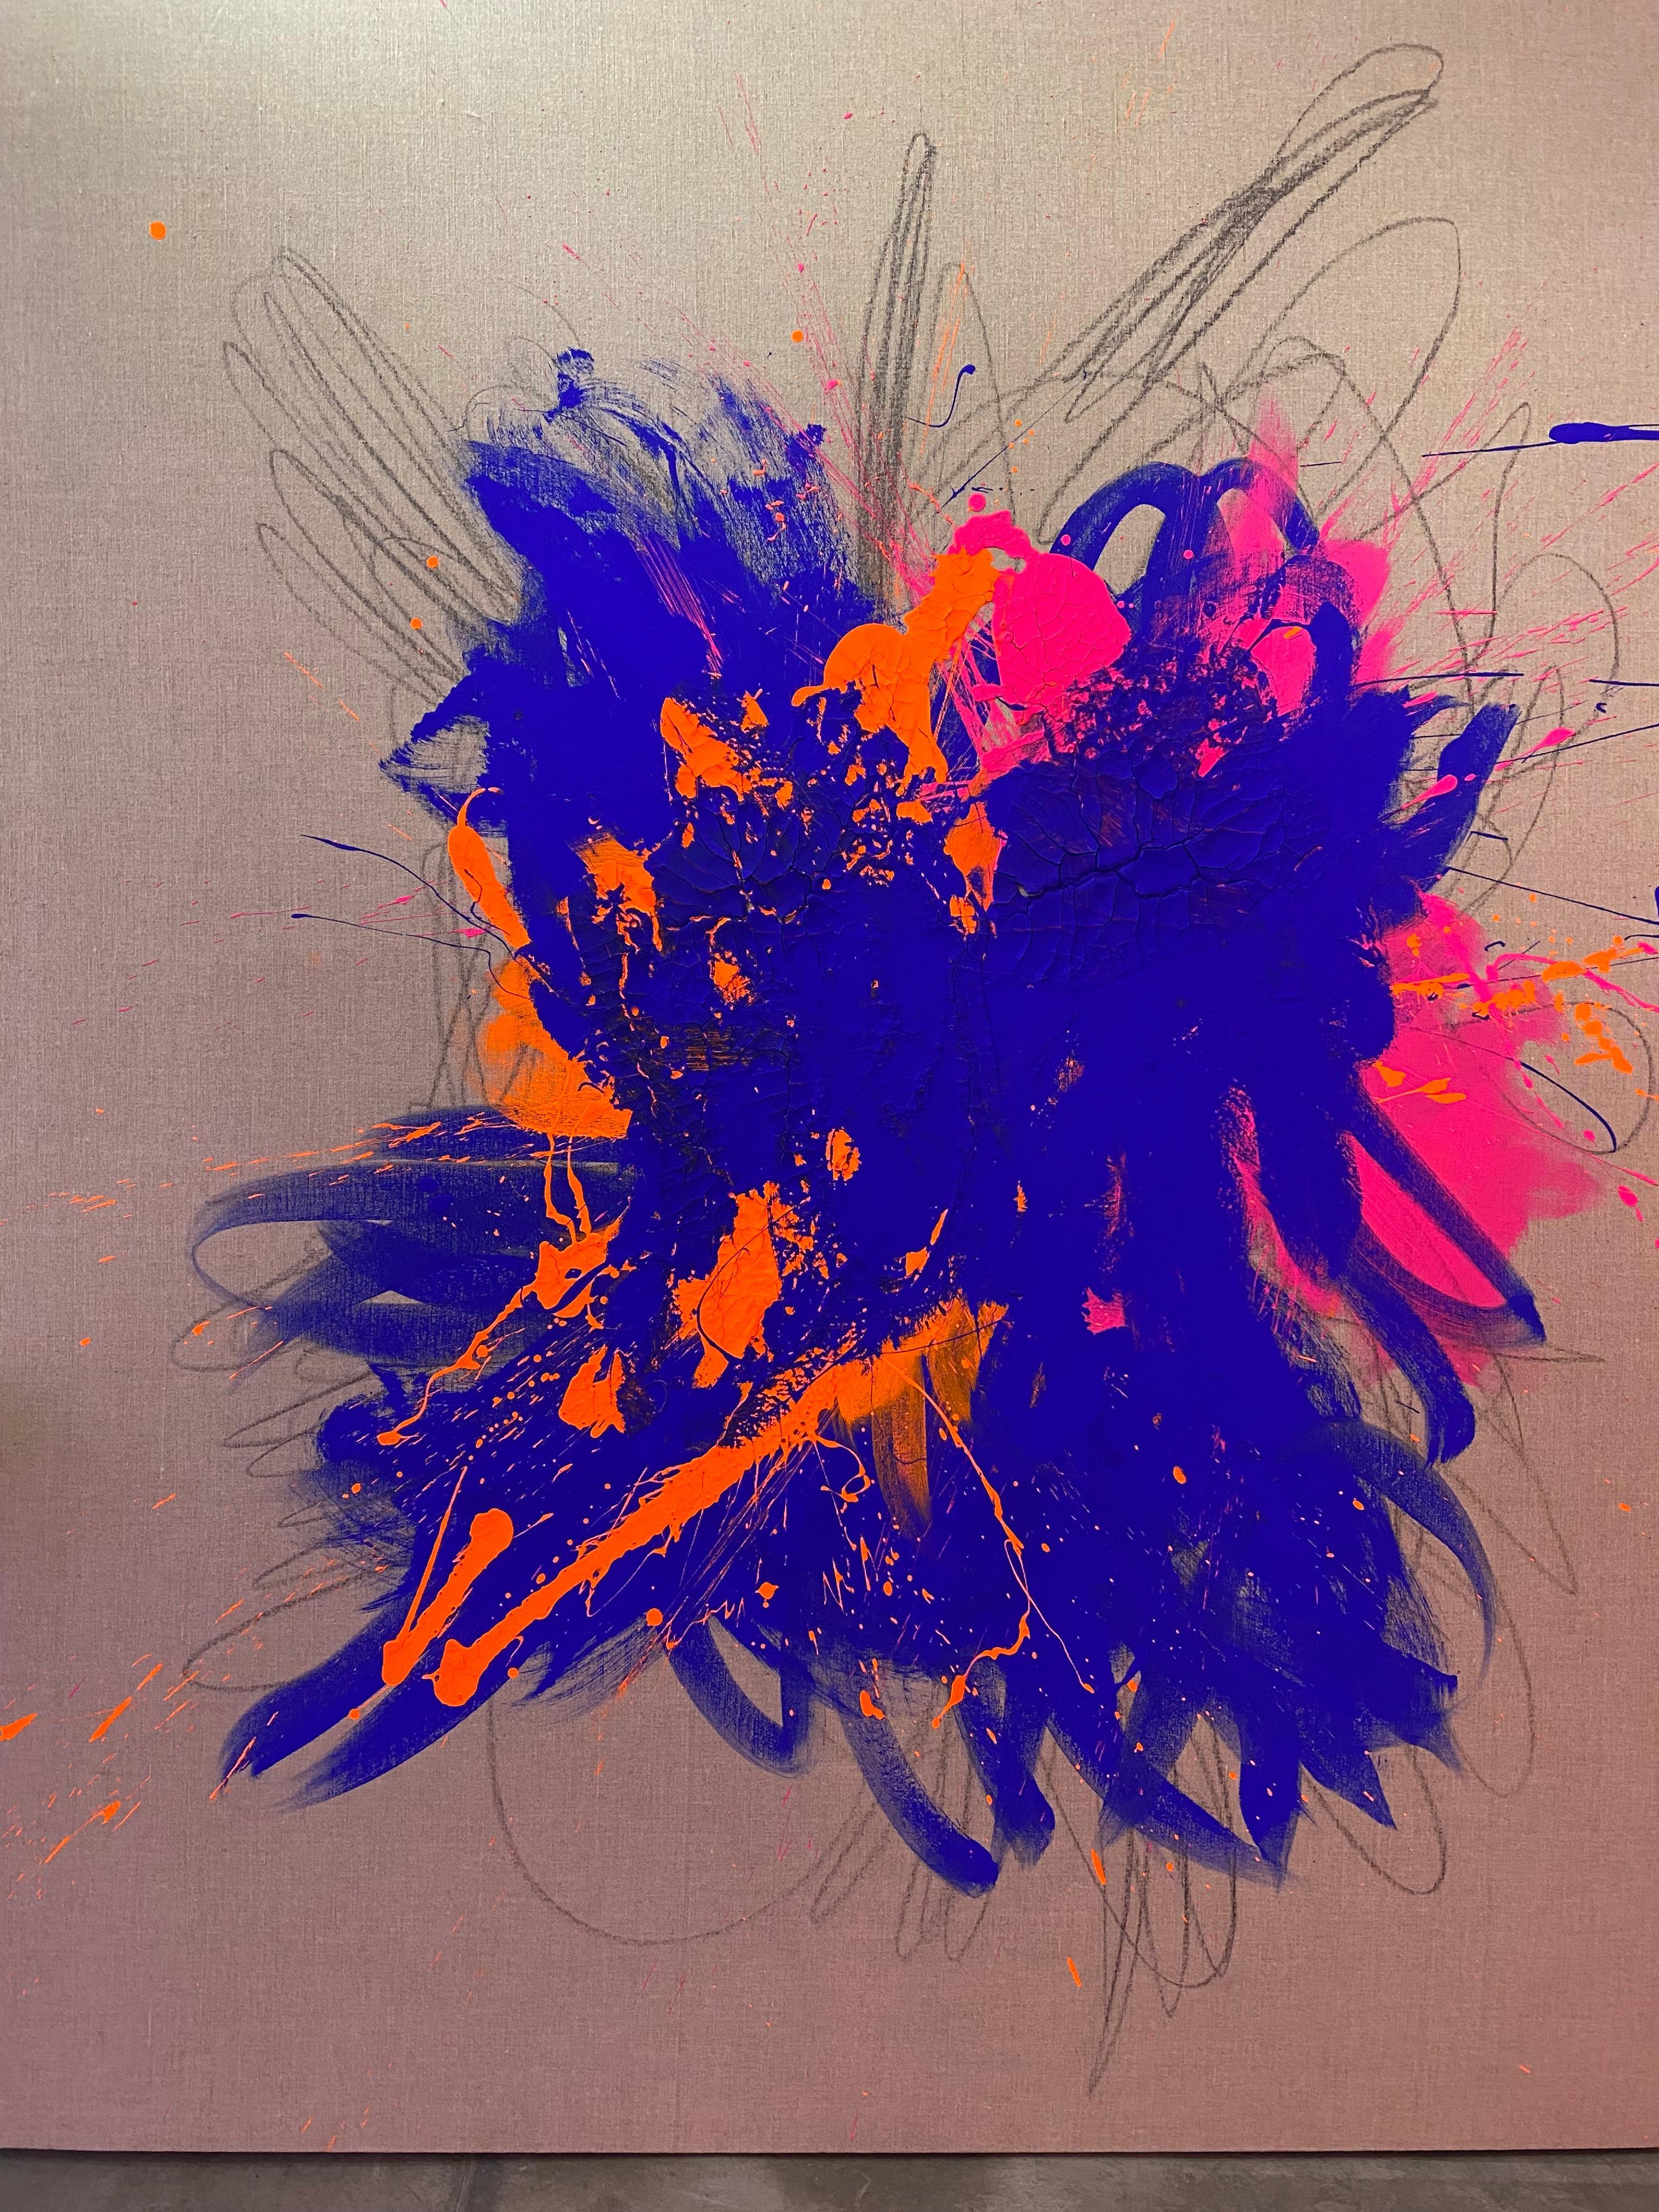 Carlos Mercado Abstract Painting - Big bang Abstract 2